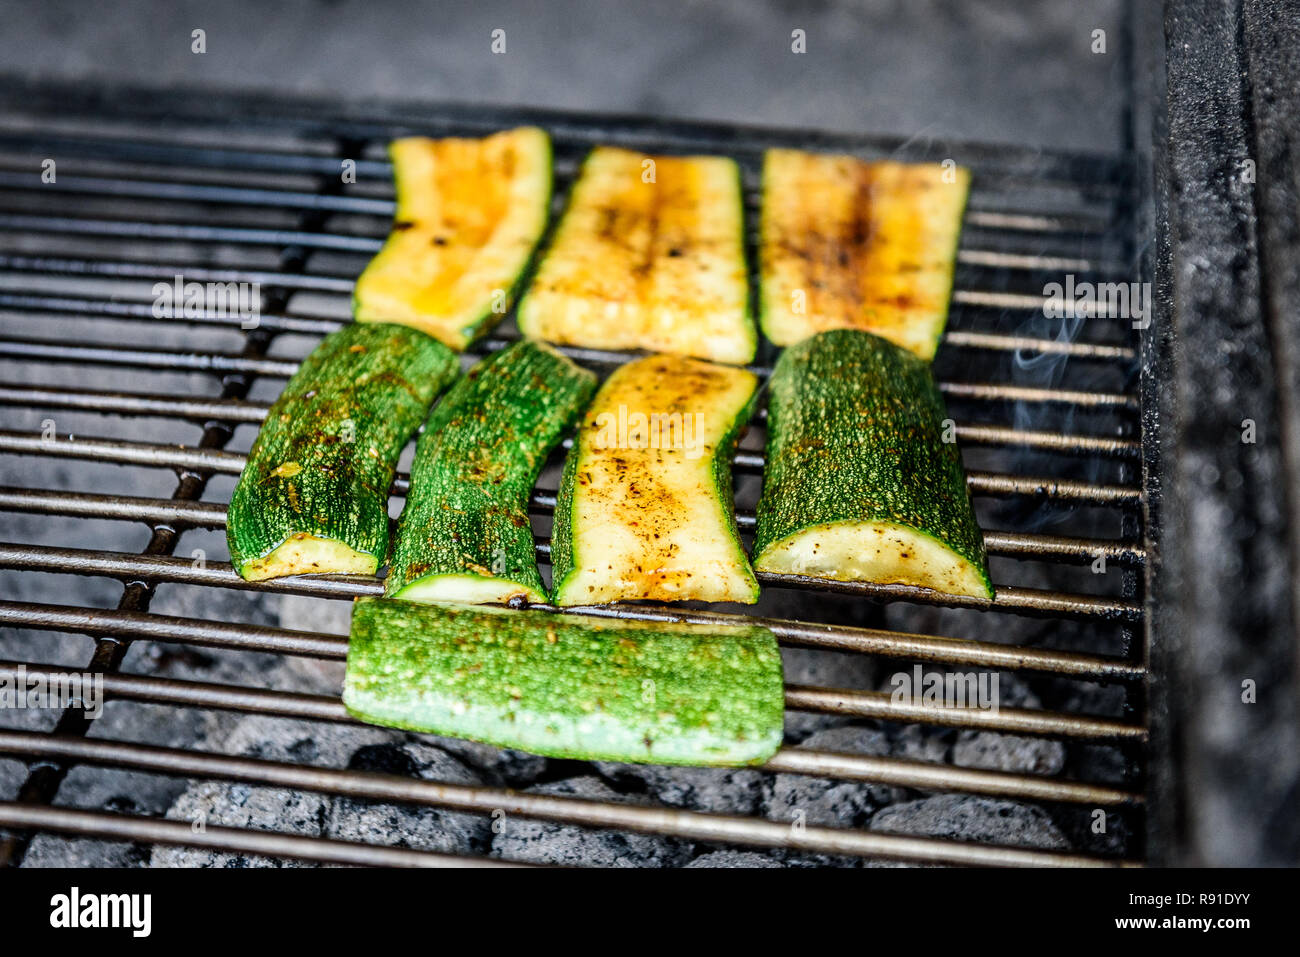 Courgette courgette ou griller sur un barbecue au charbon. En bonne santé dans un plat méditerranéen traditionnel préparé en cheminée barbecue. Banque D'Images